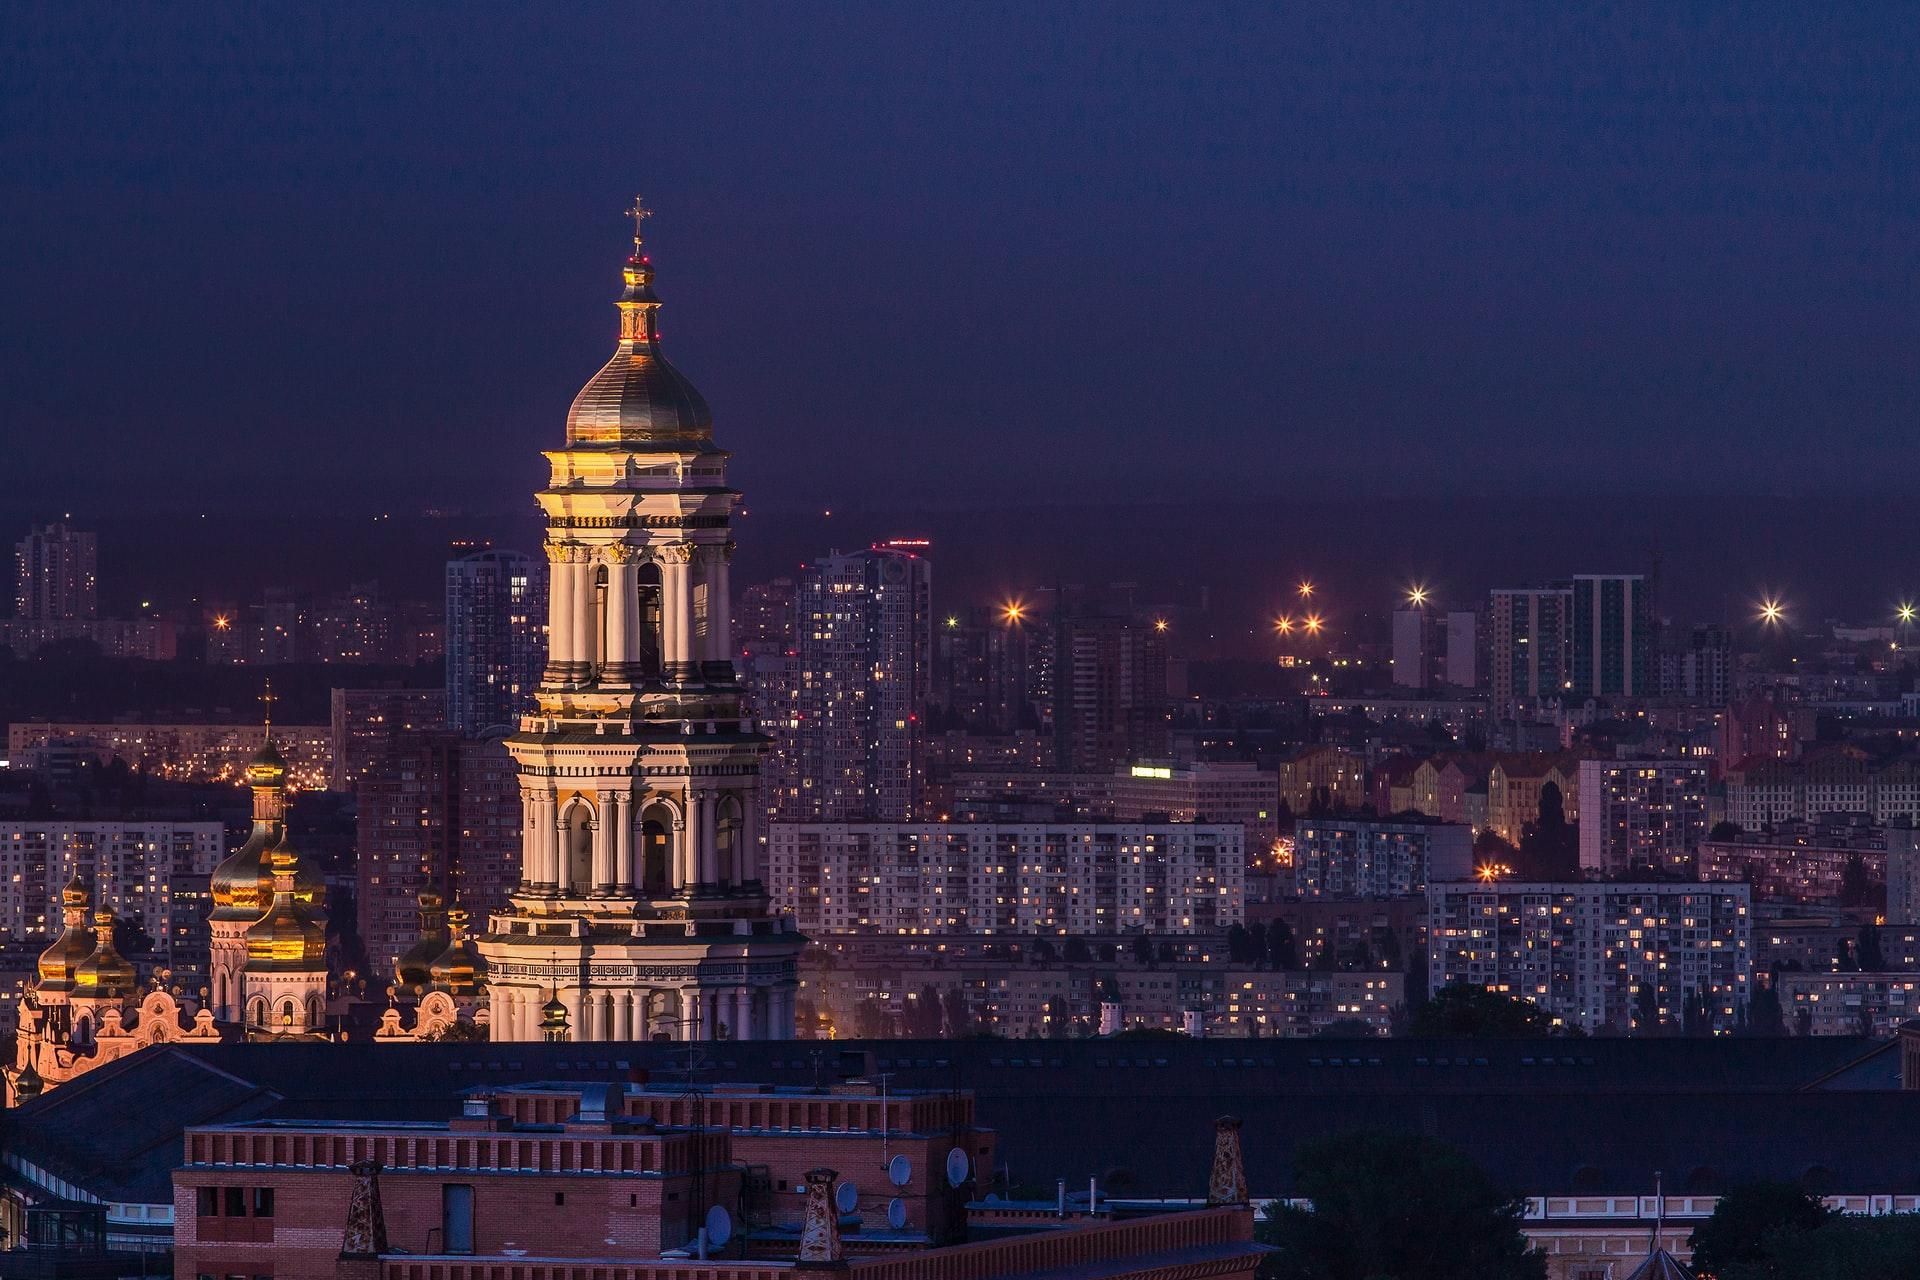 "Город каштанового счастья": как известные политики поздравили Киев с днем рождения